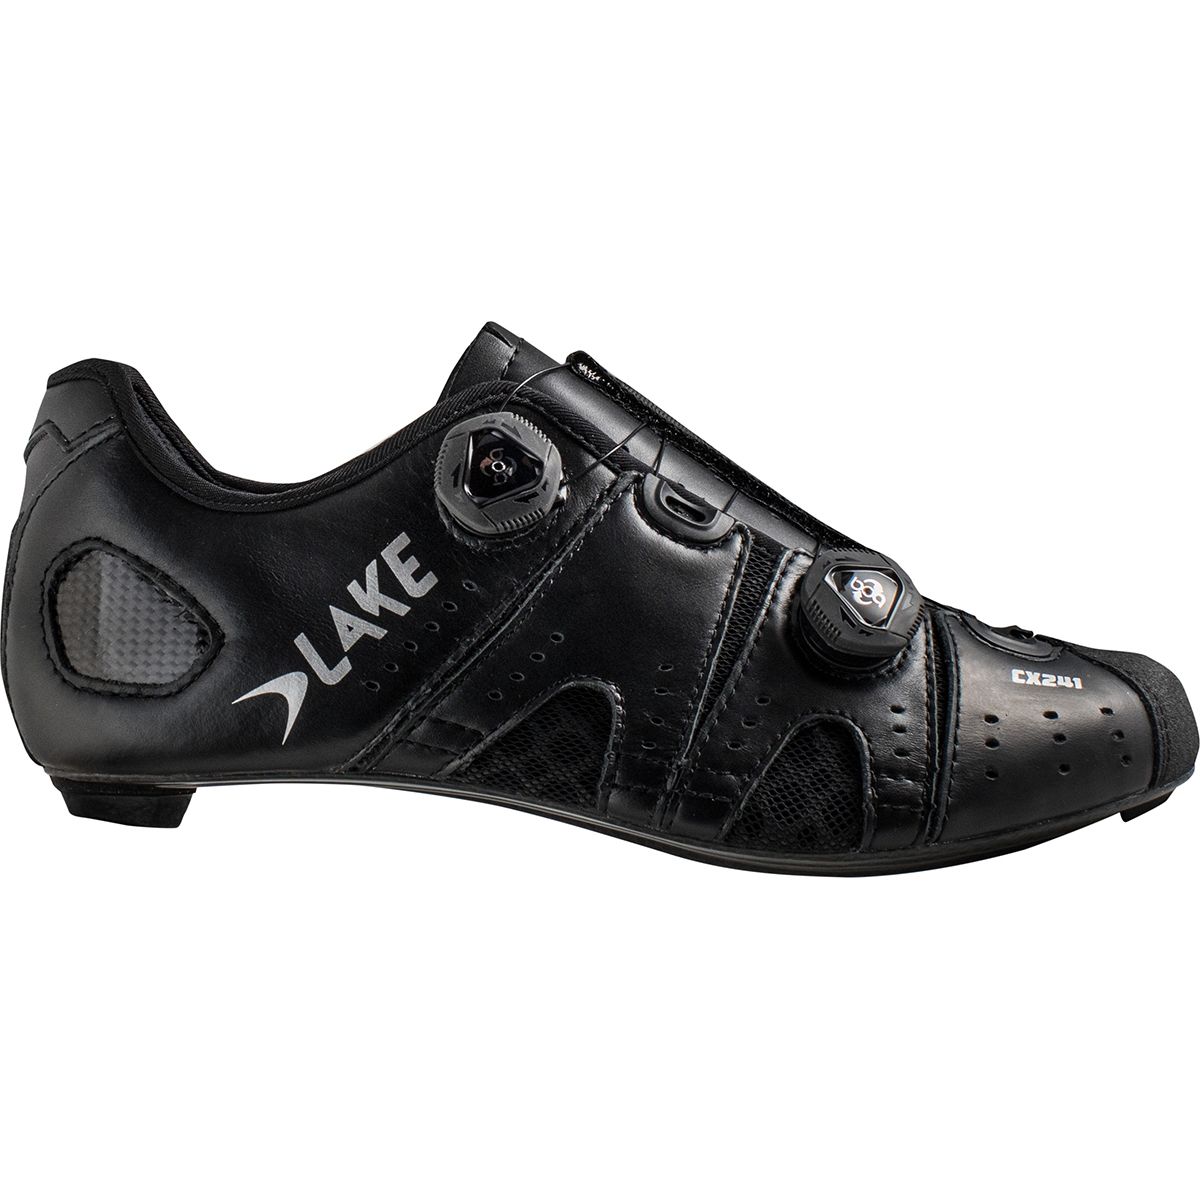 Lake CX241 Wide Cycling Shoe - Men's